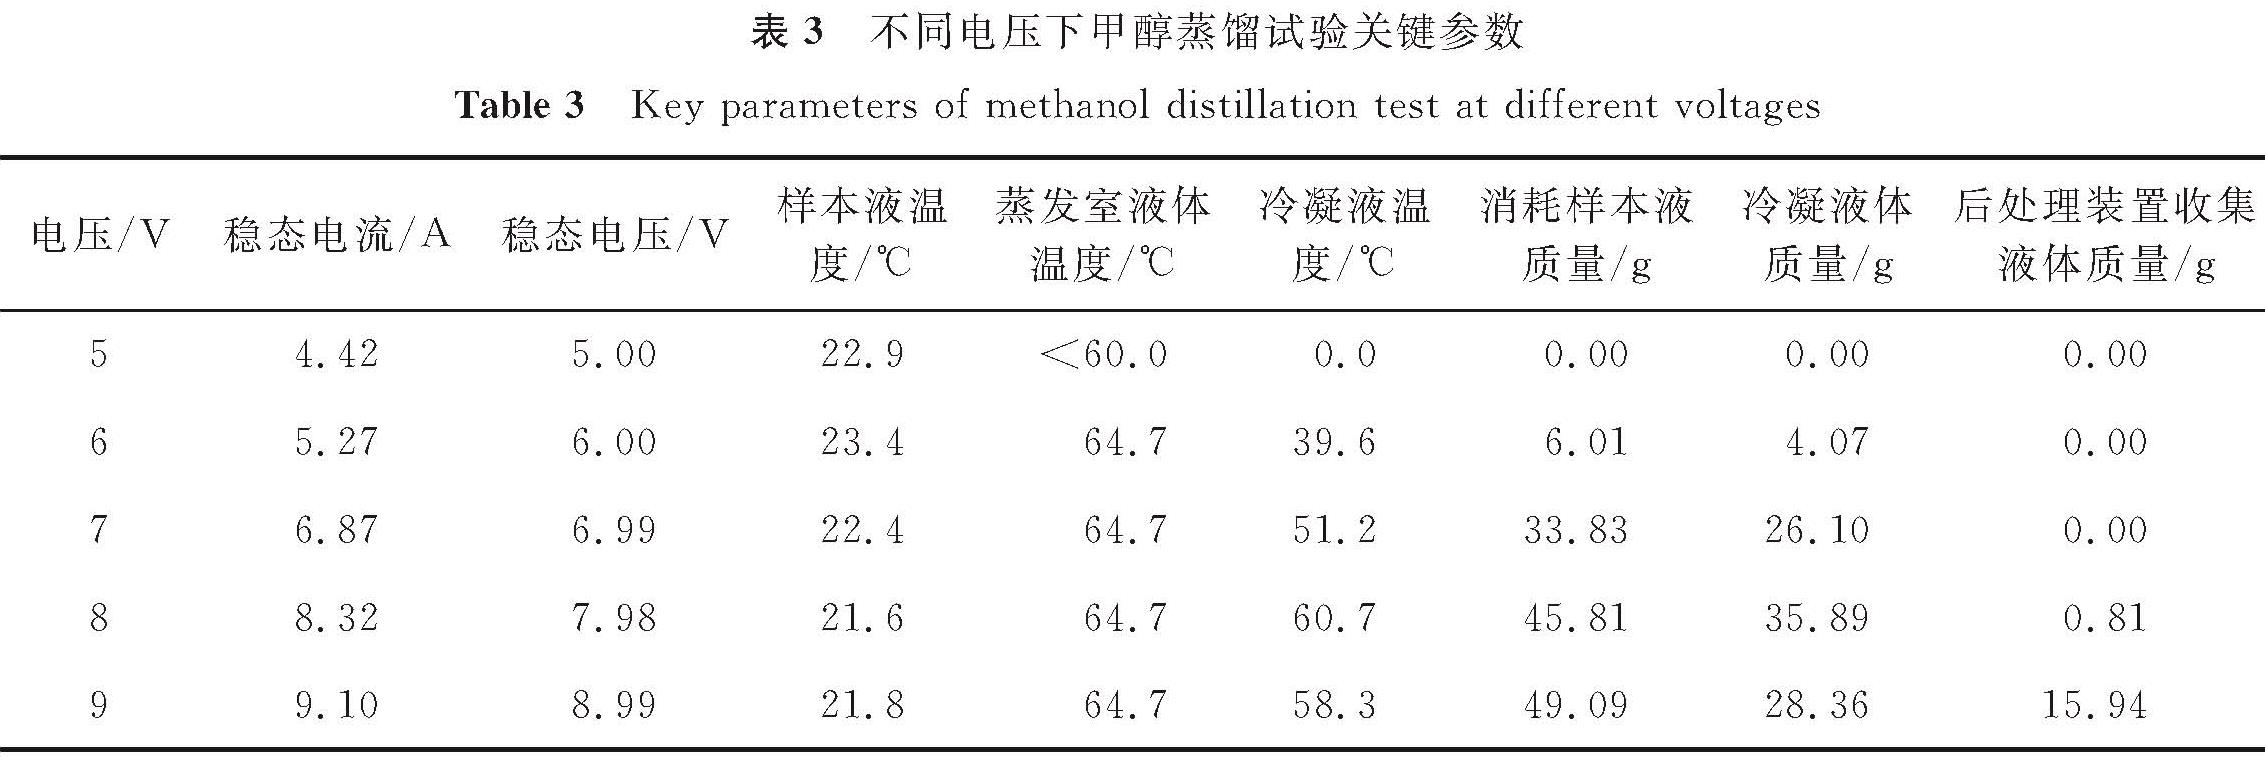 表3 不同电压下甲醇蒸馏试验关键参数<br/>Table 3 Key parameters of methanol distillation test at different voltages